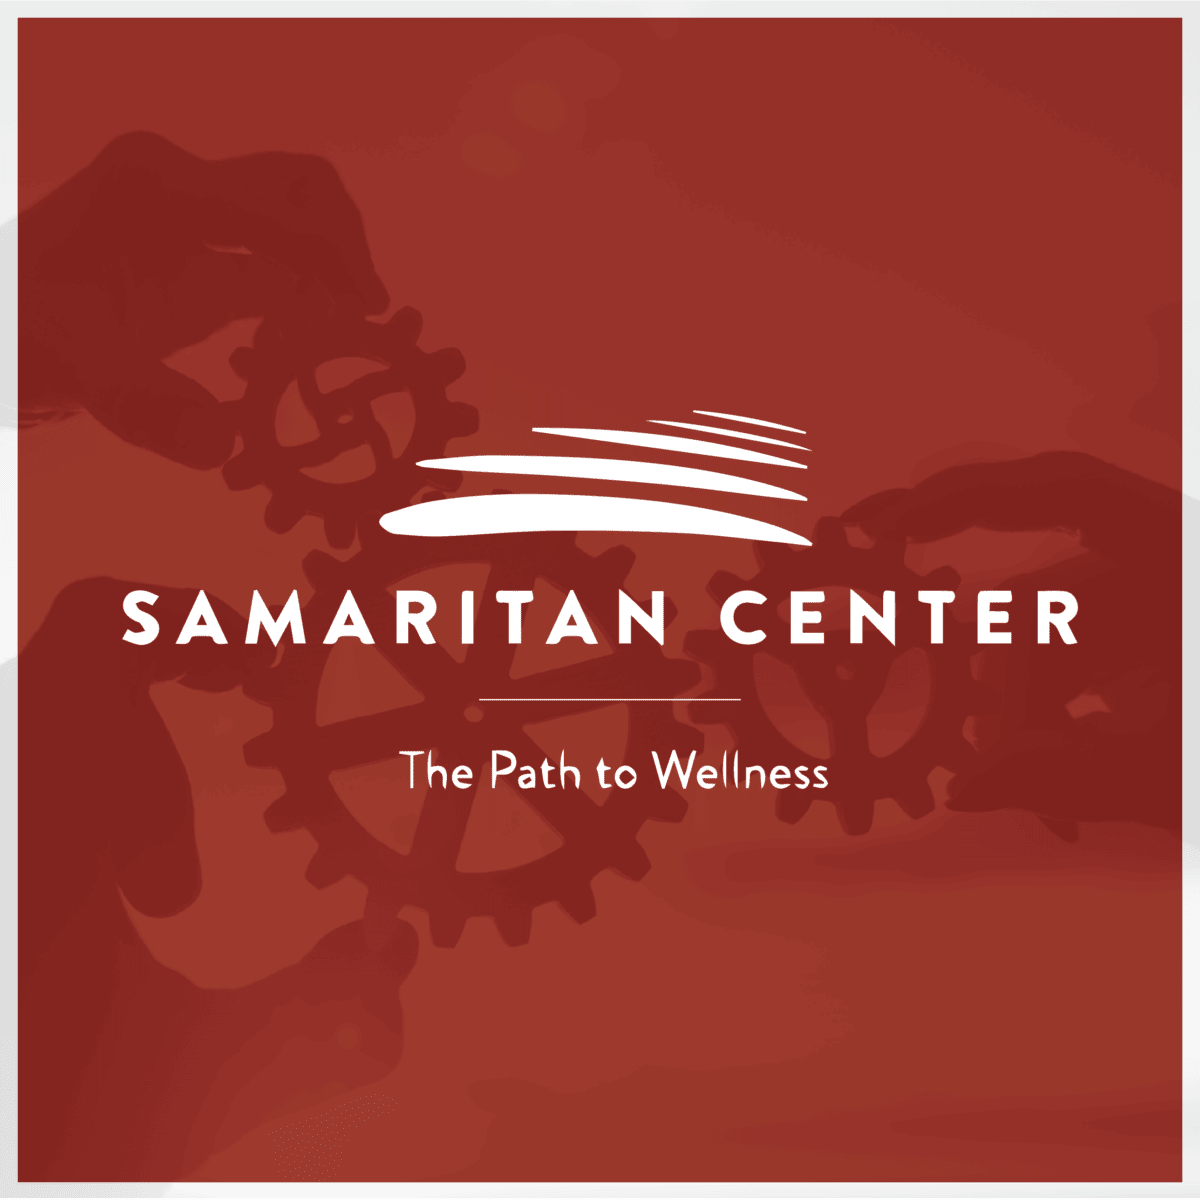 Samaritan Center Logo